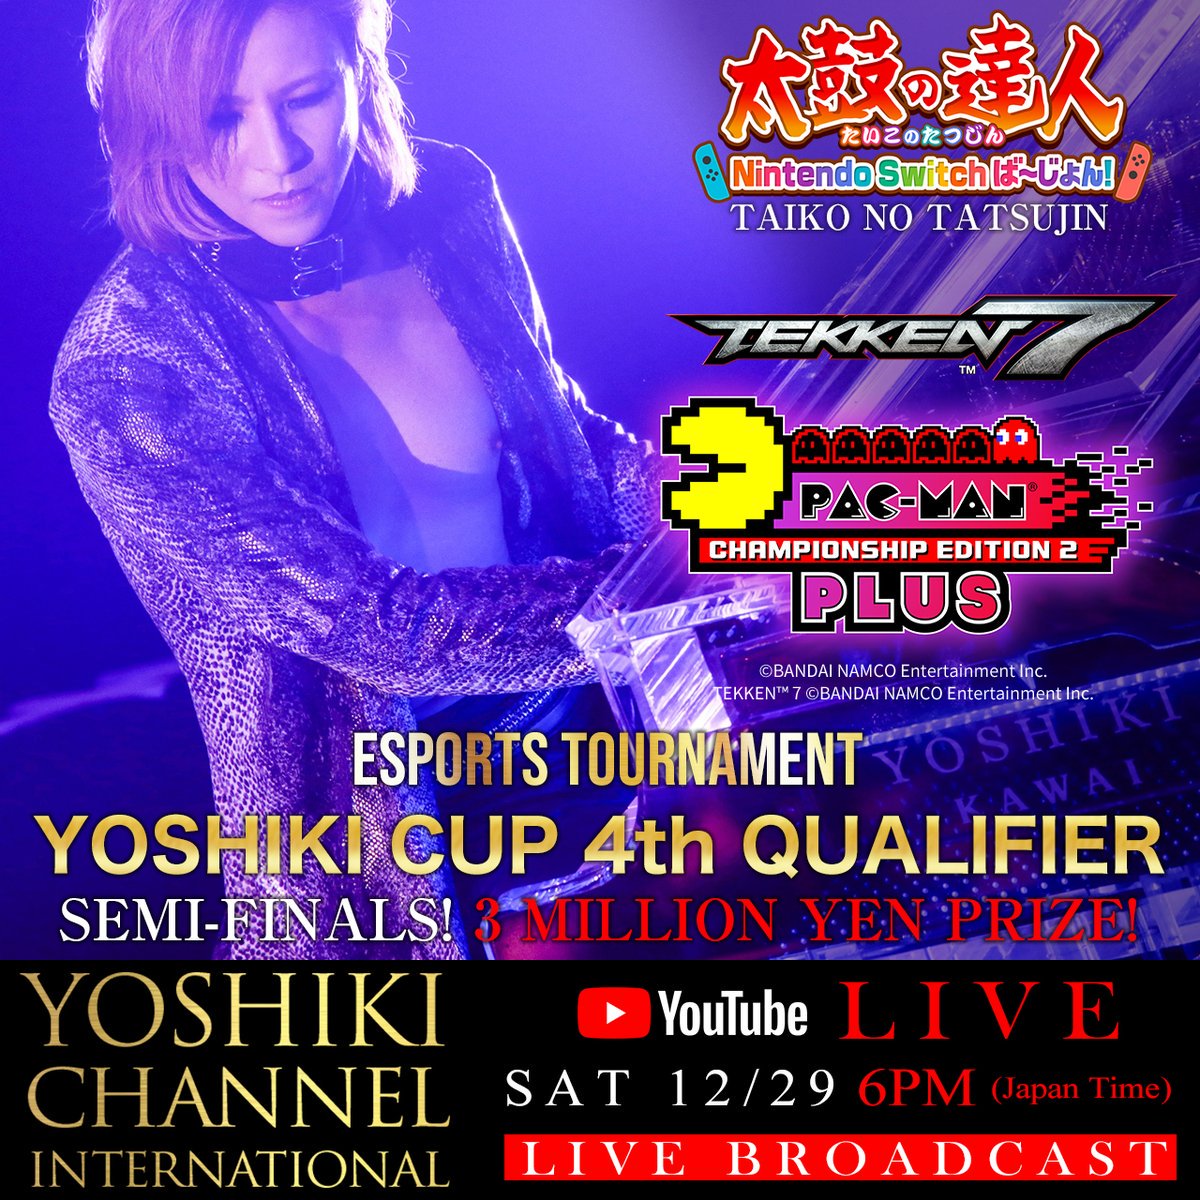 今夜１８時〜TONIGHT!
I'll be streaming live on #YoshikiChannel 12/29 6:00pm Japan time #Yoshiki Cup Semi-Finals on #YoshikiChannelInternational
International→ bit.ly/YoshikiChannel…
In Japan→ bit.ly/YoshikiChannel…
#Tekken7 #PacMan #TaikoNoTatsujin #太鼓の達人 #NintendoSwitch